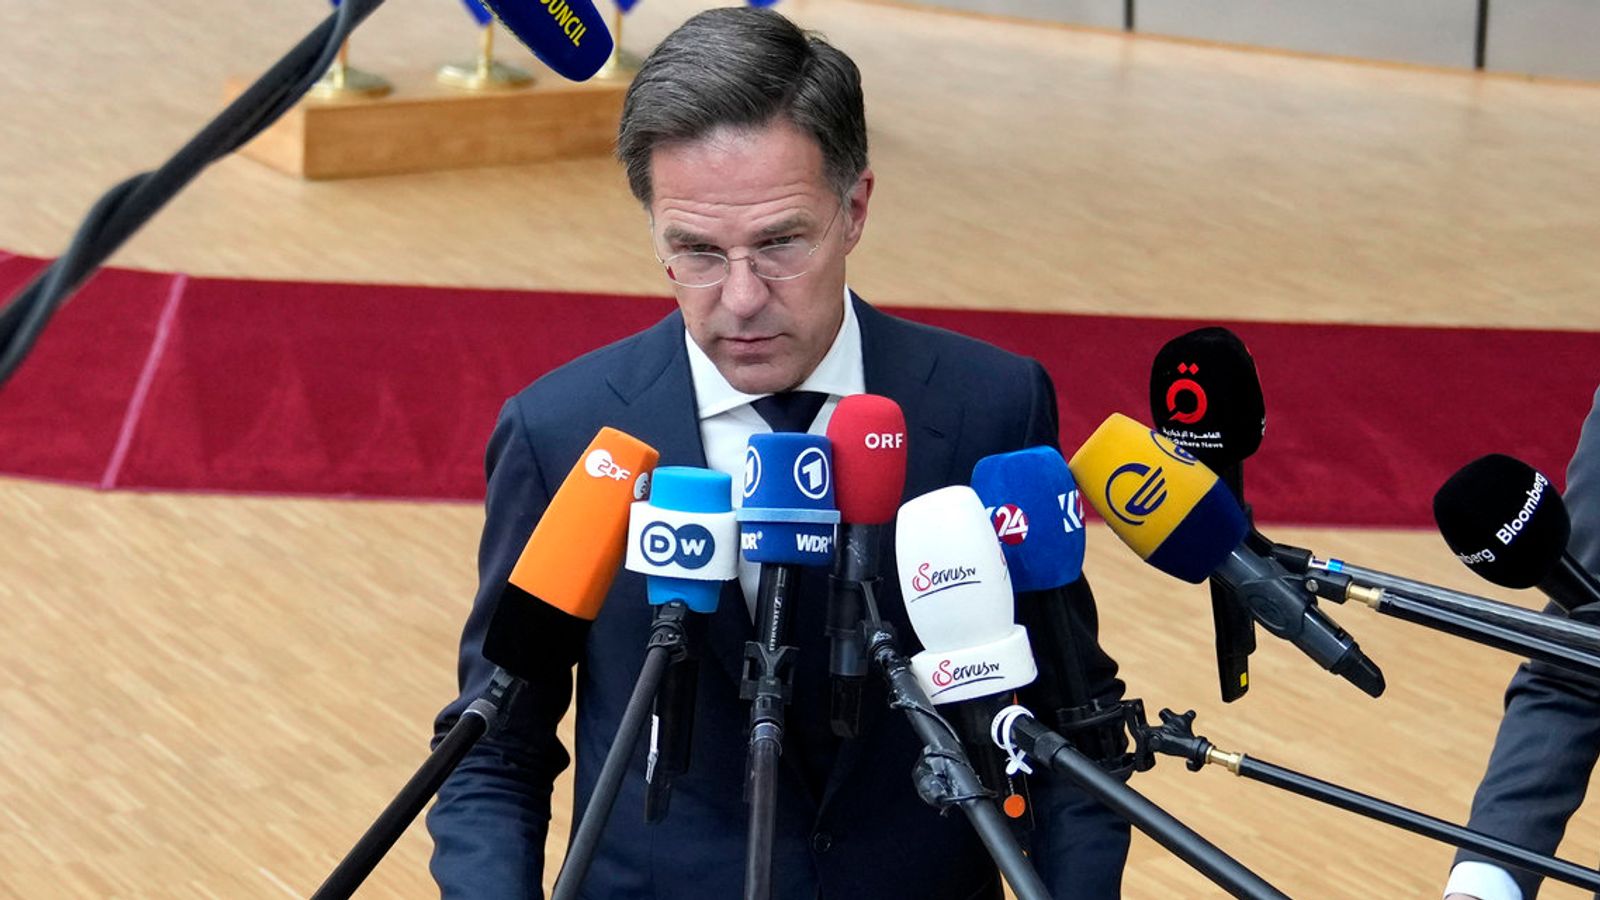 Rota mengumumkan pengunduran diri pemerintah Belanda